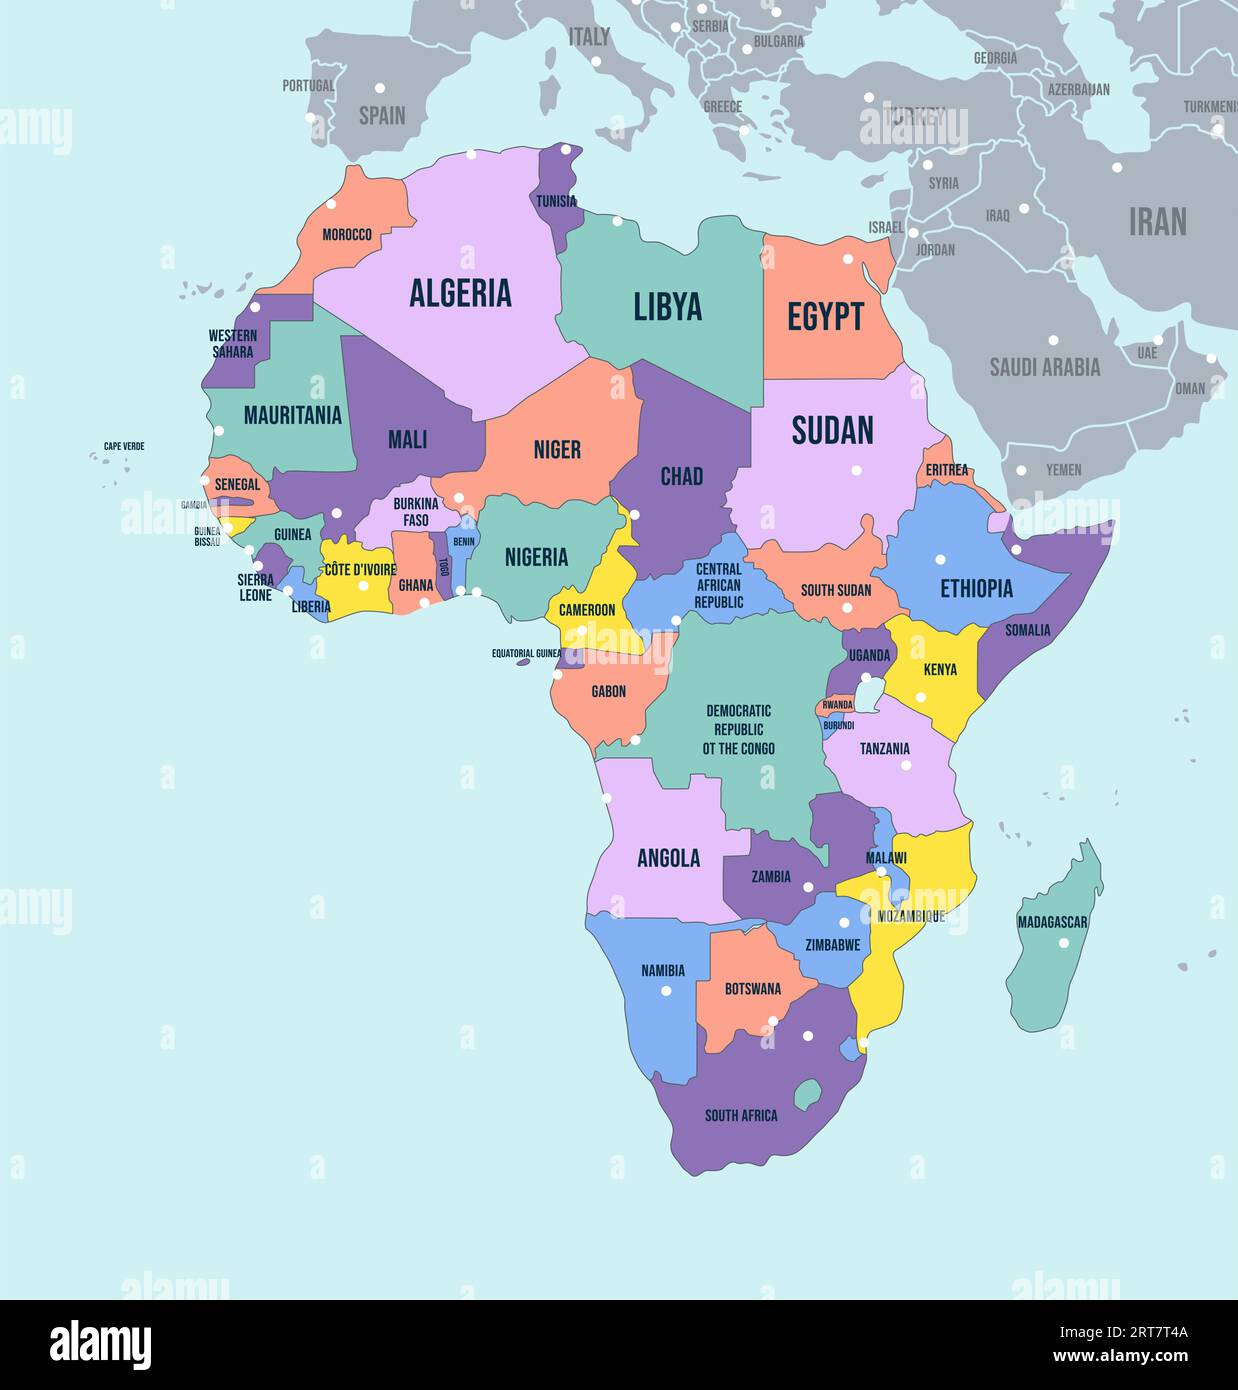 Mappa politica del continente africano. Nomi dei paesi con etichetta inglese e illustrazione vettoriale dei confini delle regioni africane Illustrazione Vettoriale